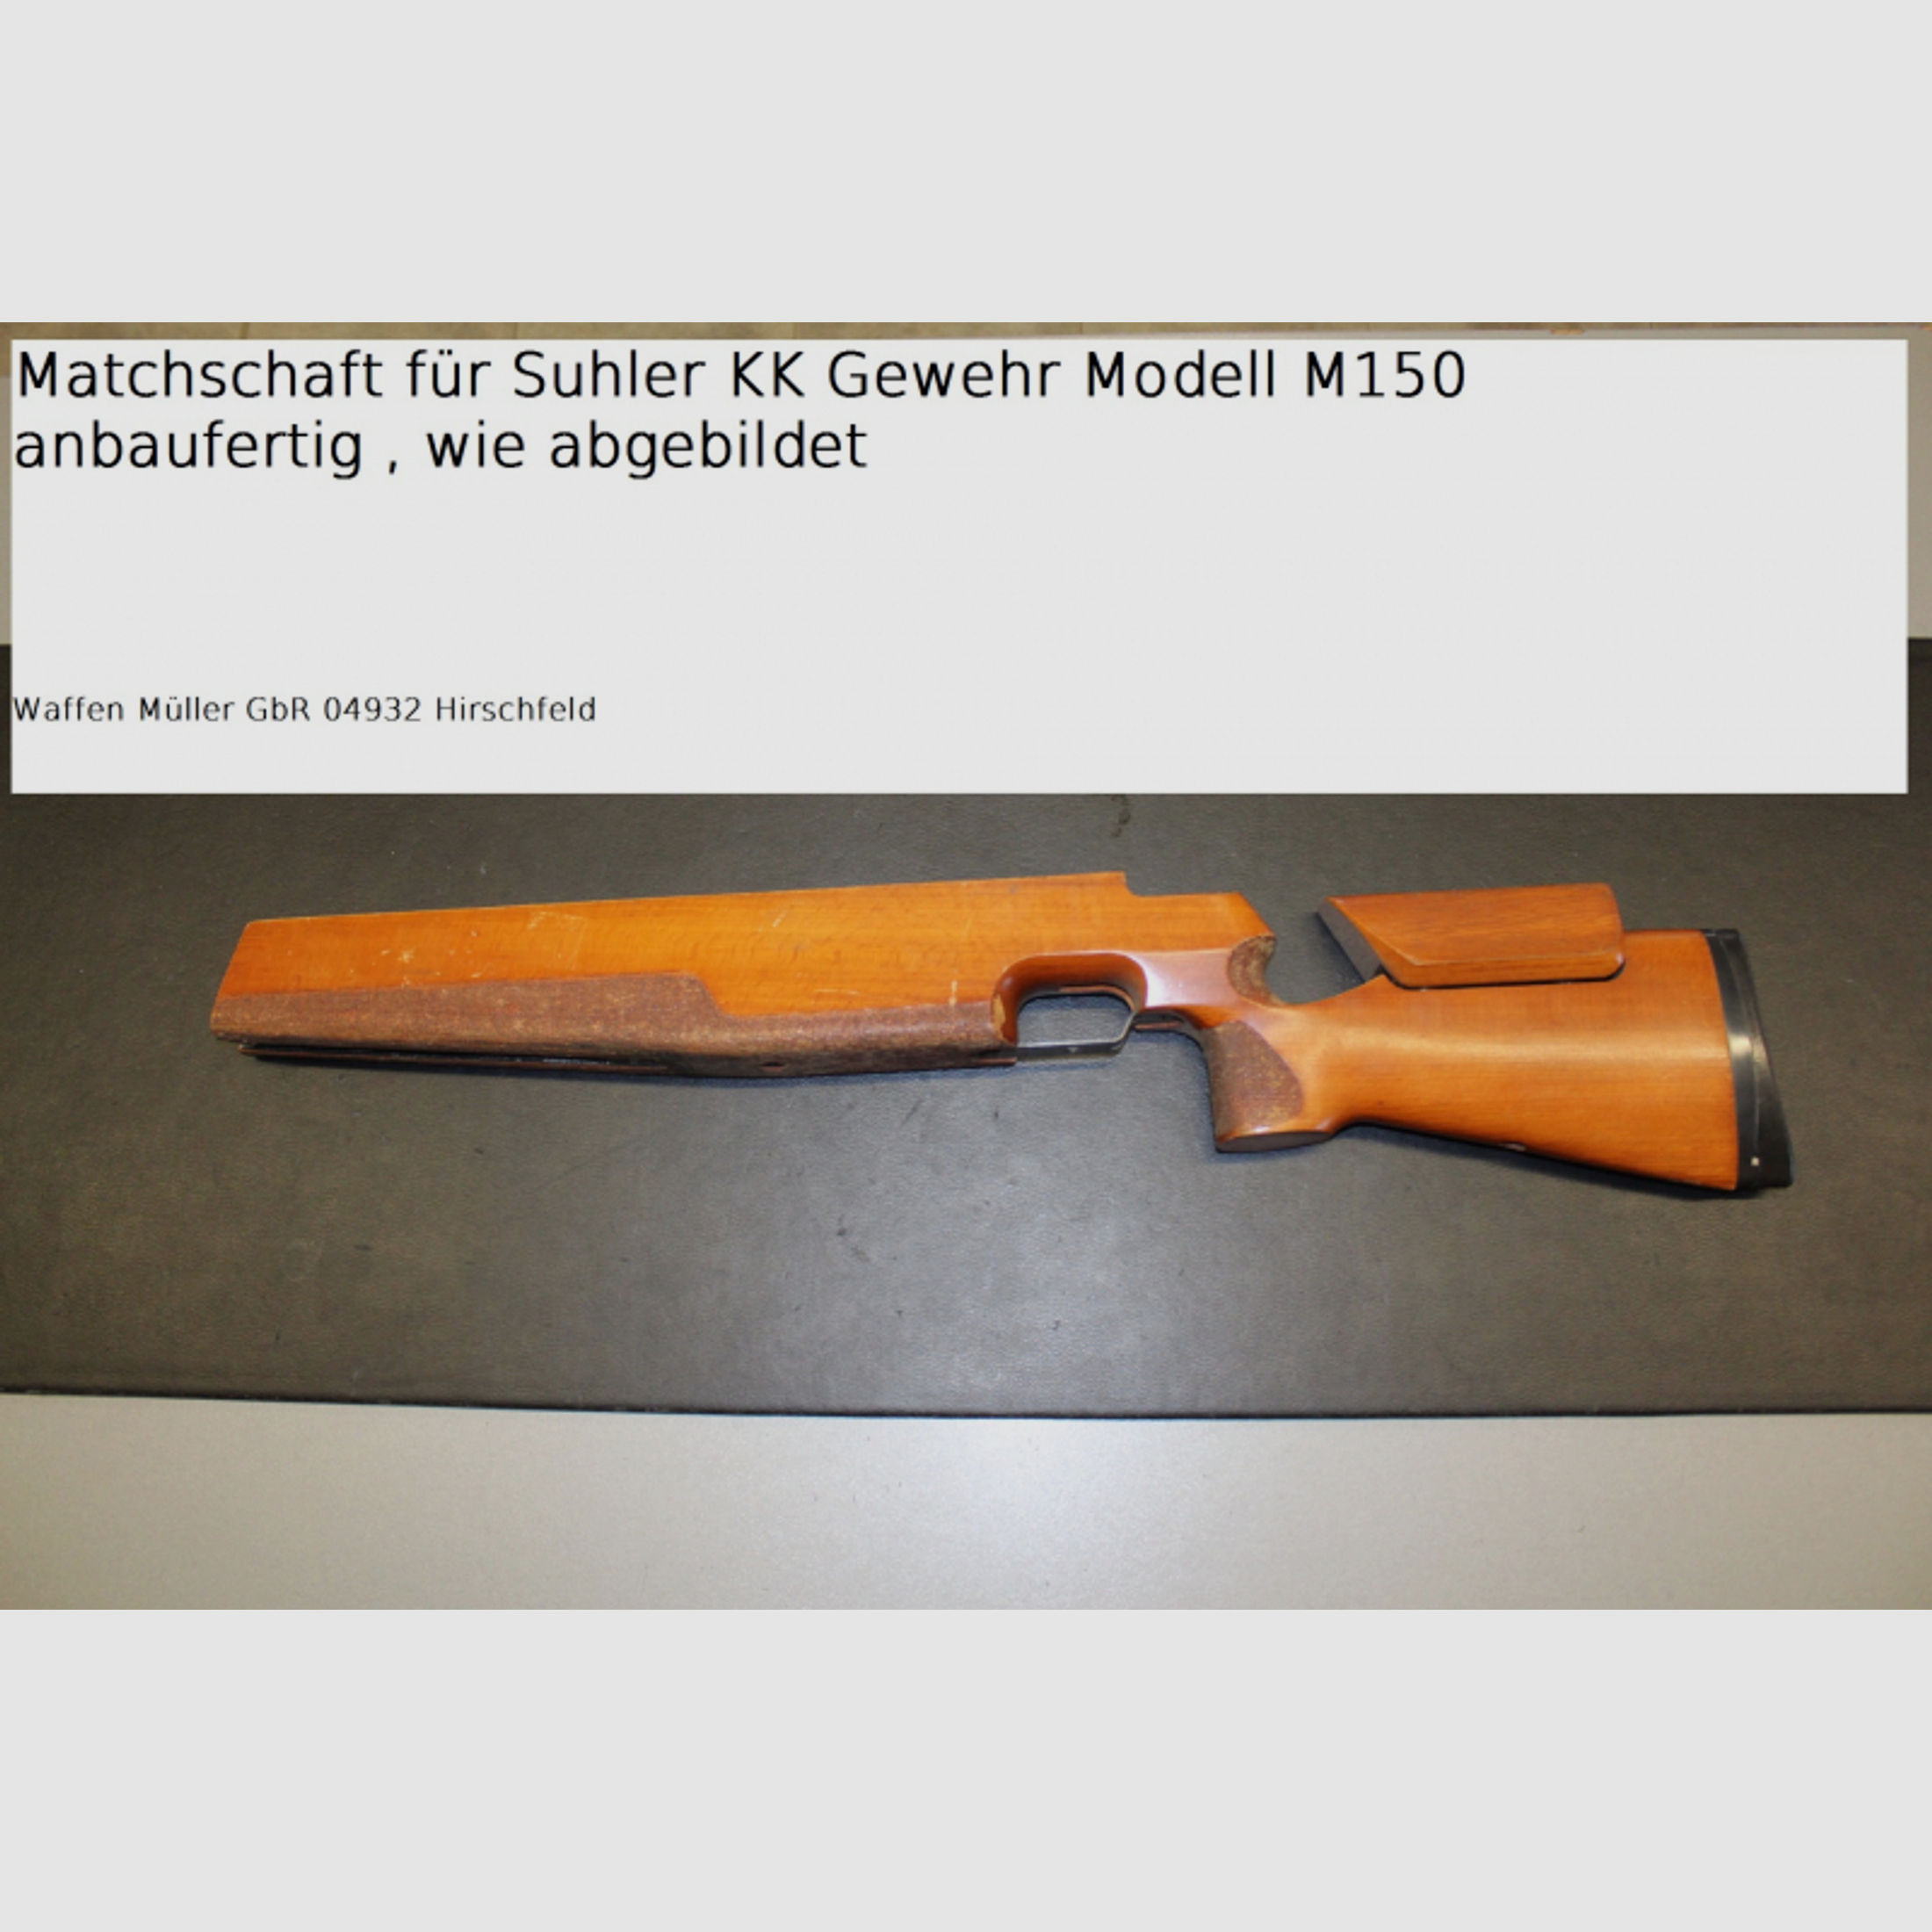 Orginal KK Matchschaft für Suhler M 150 Gewehr